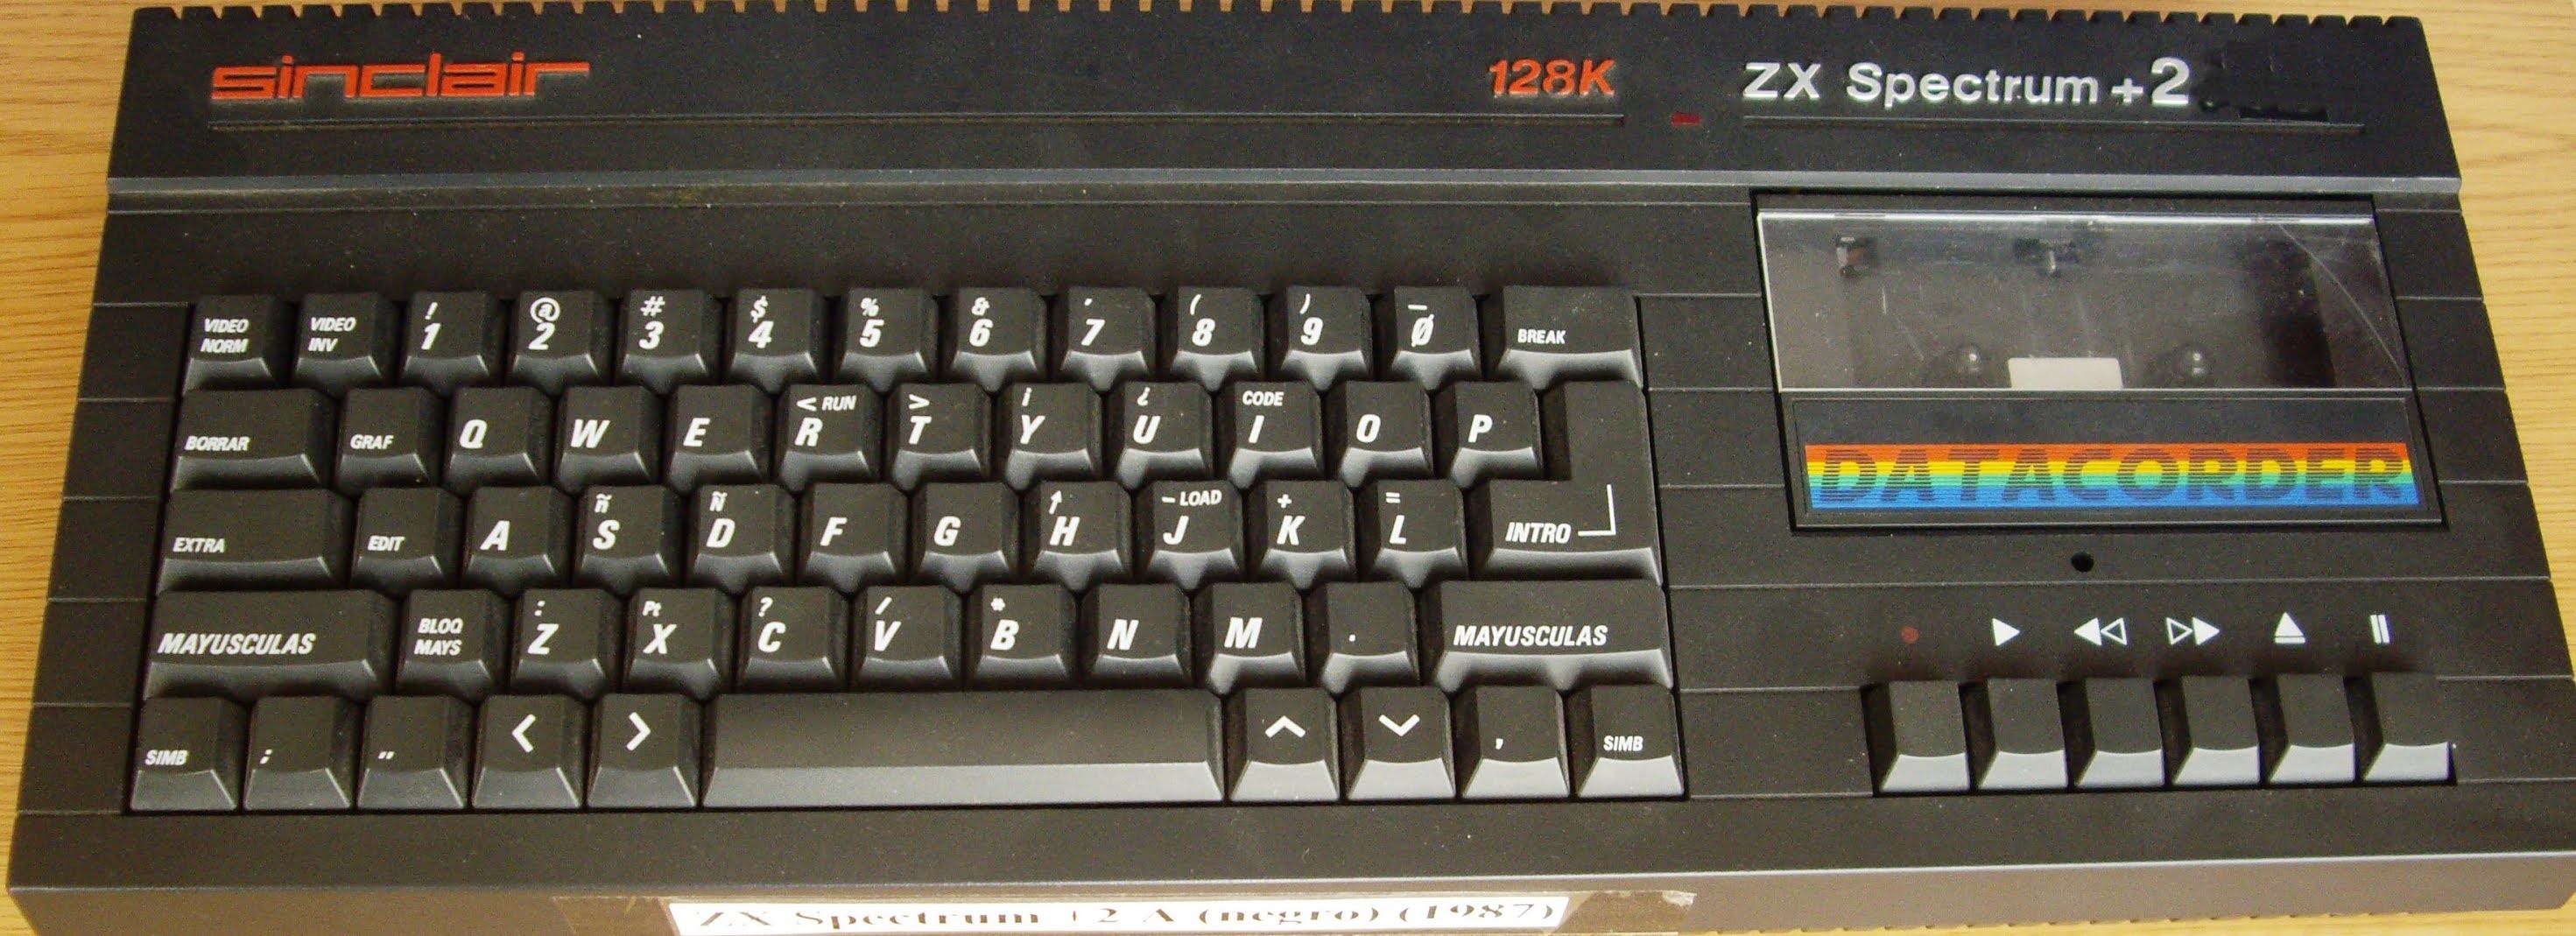 Retro Ordenadores Orty: ZX Spectrum +2A (revisión Z70830 ISSUE 2) (1987) (teclado español)